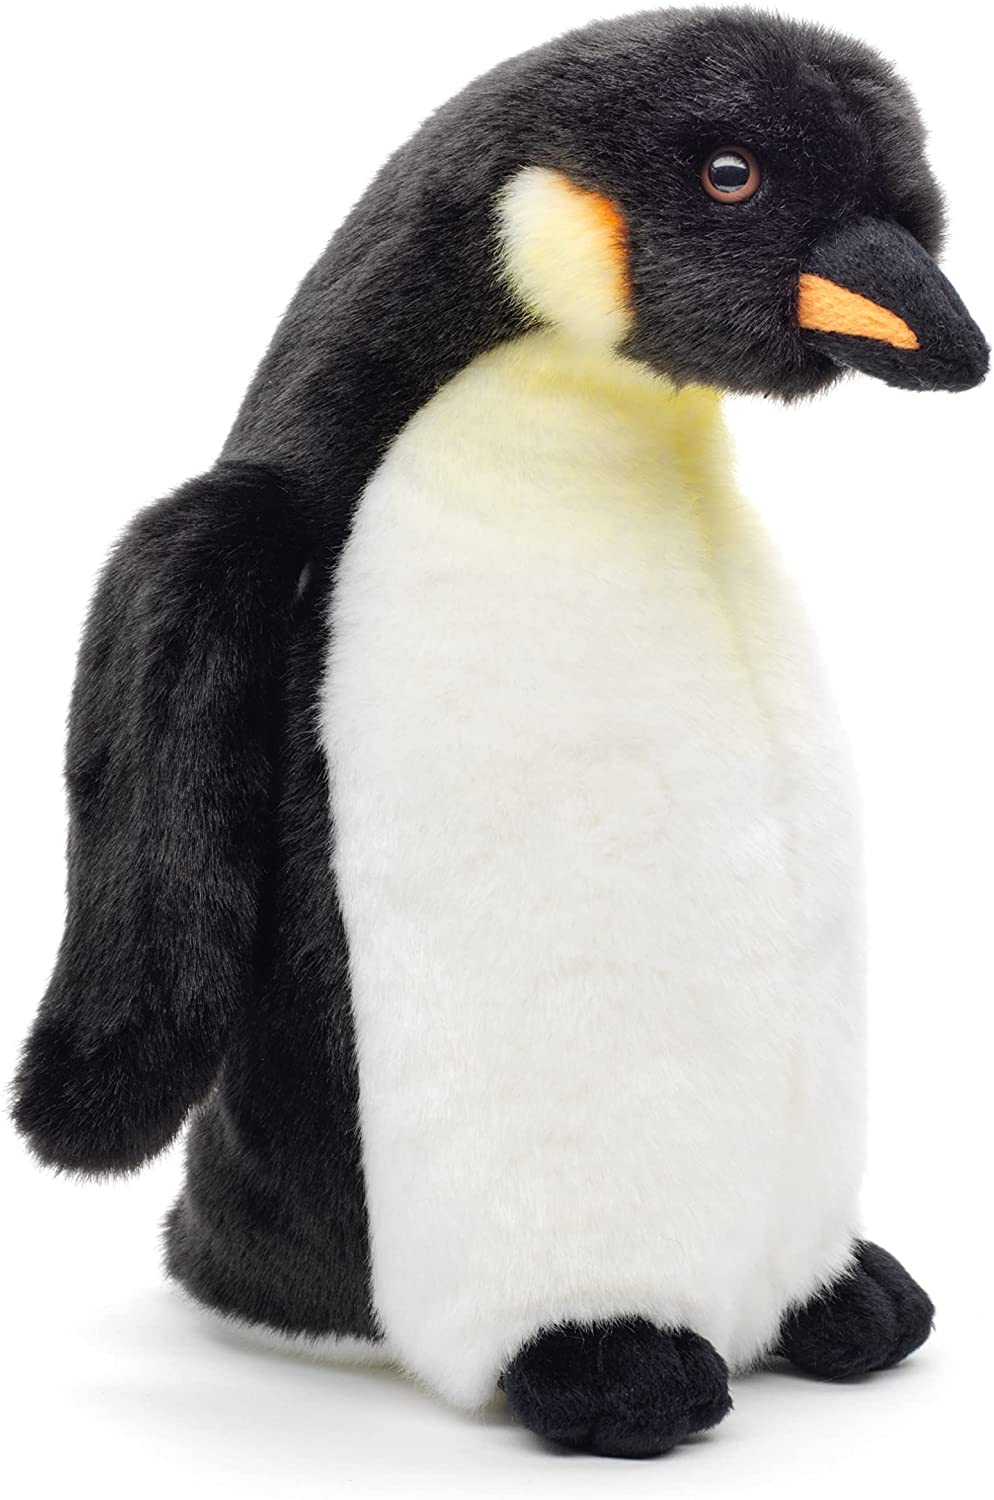 Plüschtier Stofftier Kuscheltier Seevogel Rotschnabelpinguin Pinguin Höhe 12 cm 